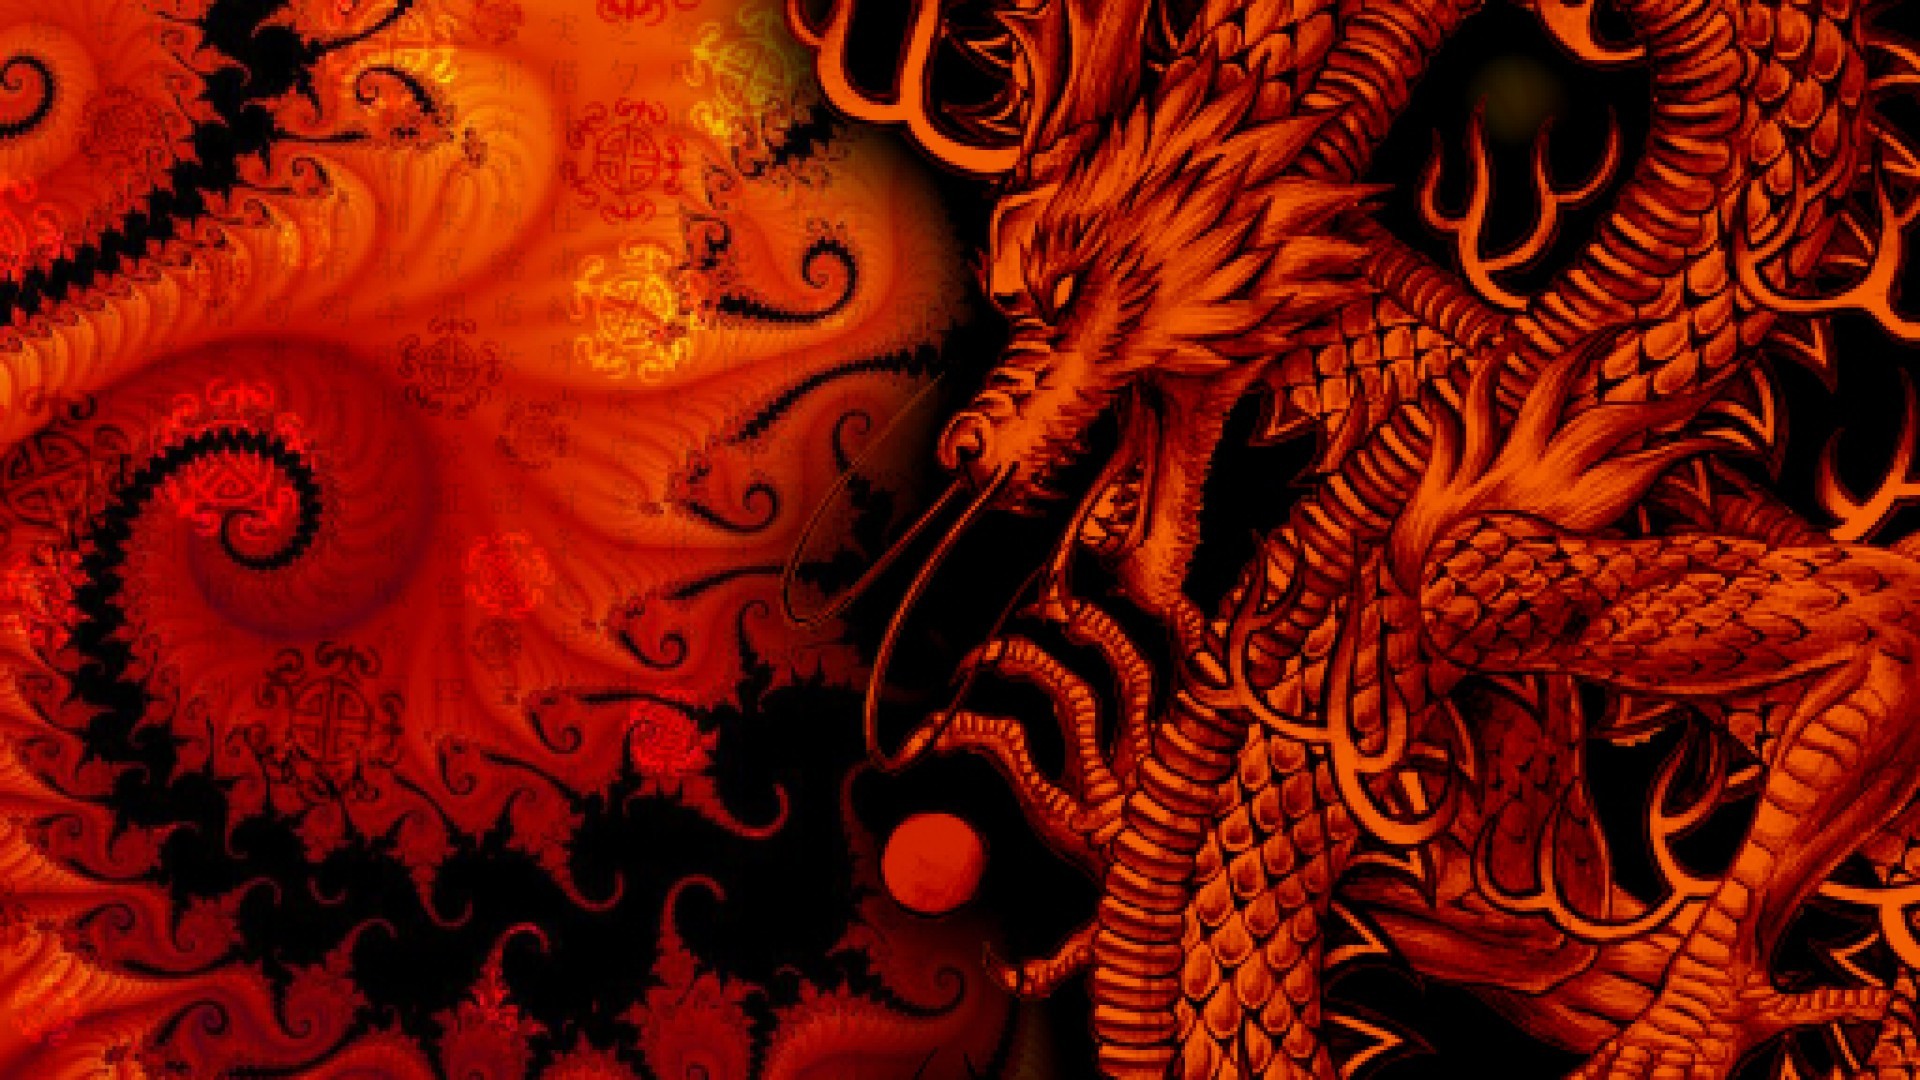 Dragon wallpaper 1920x1080 ·① Download free cool ...